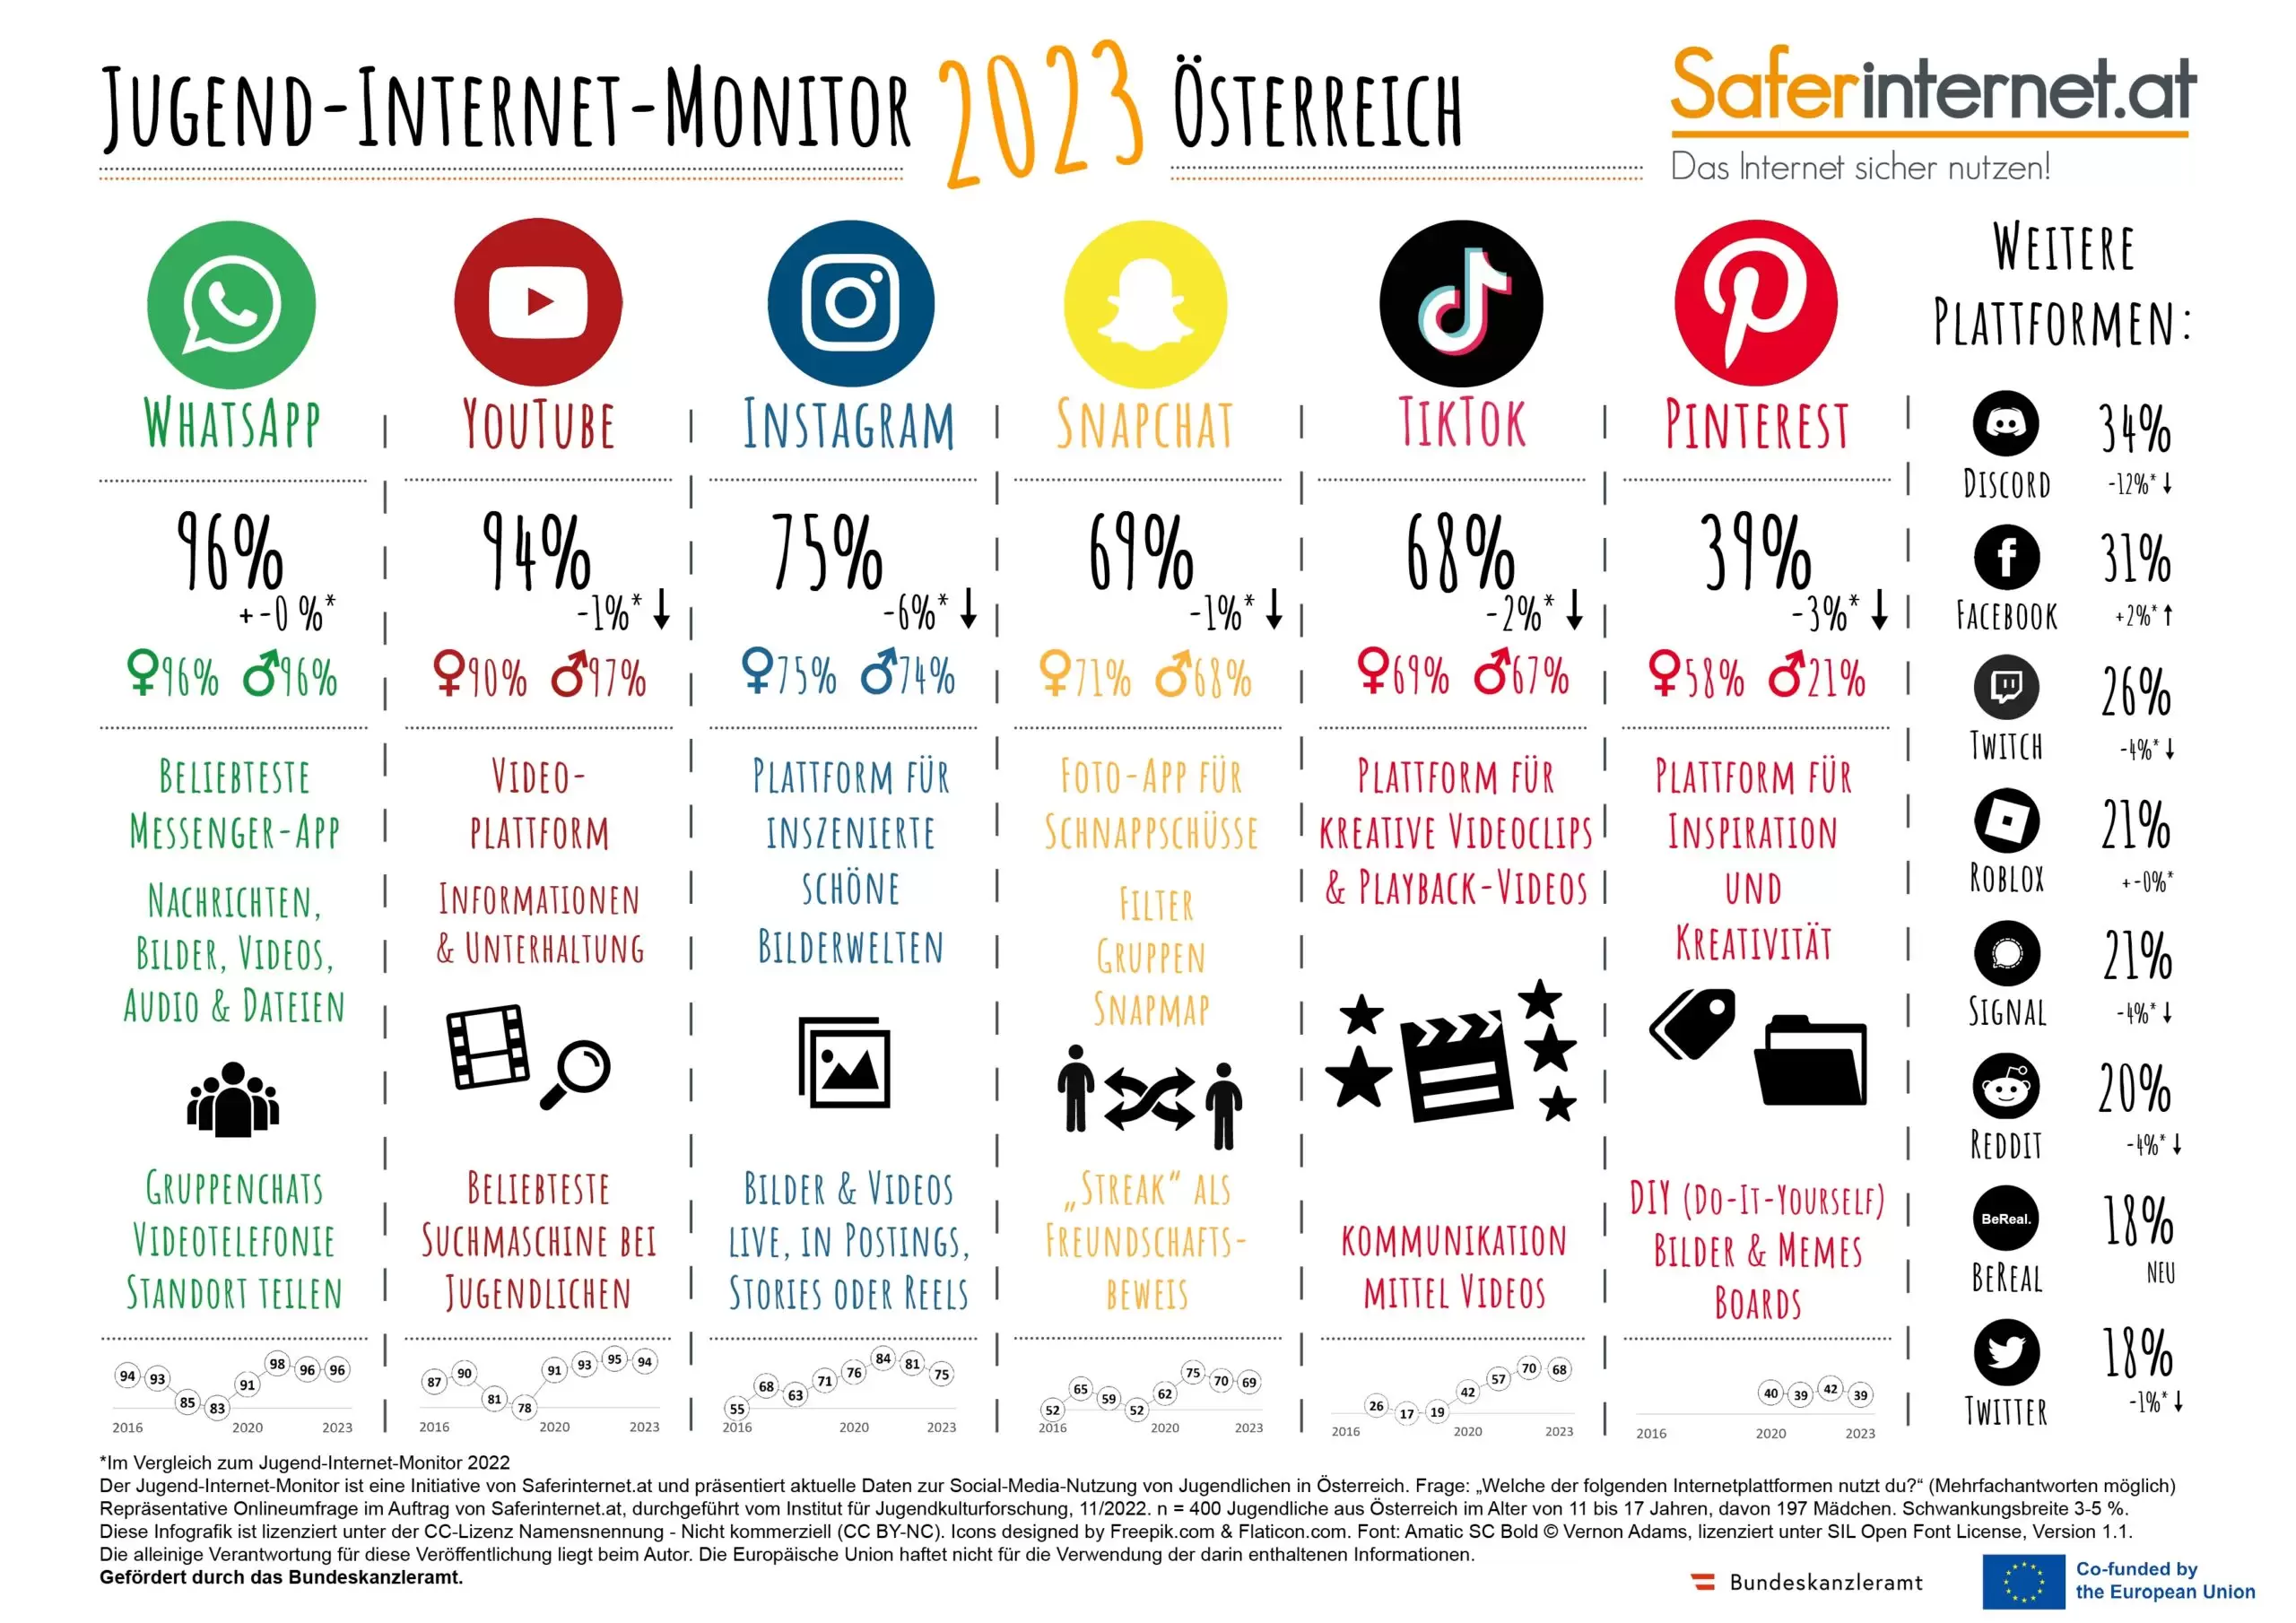 Die beliebtesten Sozialen Netzwerke der österreichischen Jugend auf einem Blick. Foto: Saferinternet.at